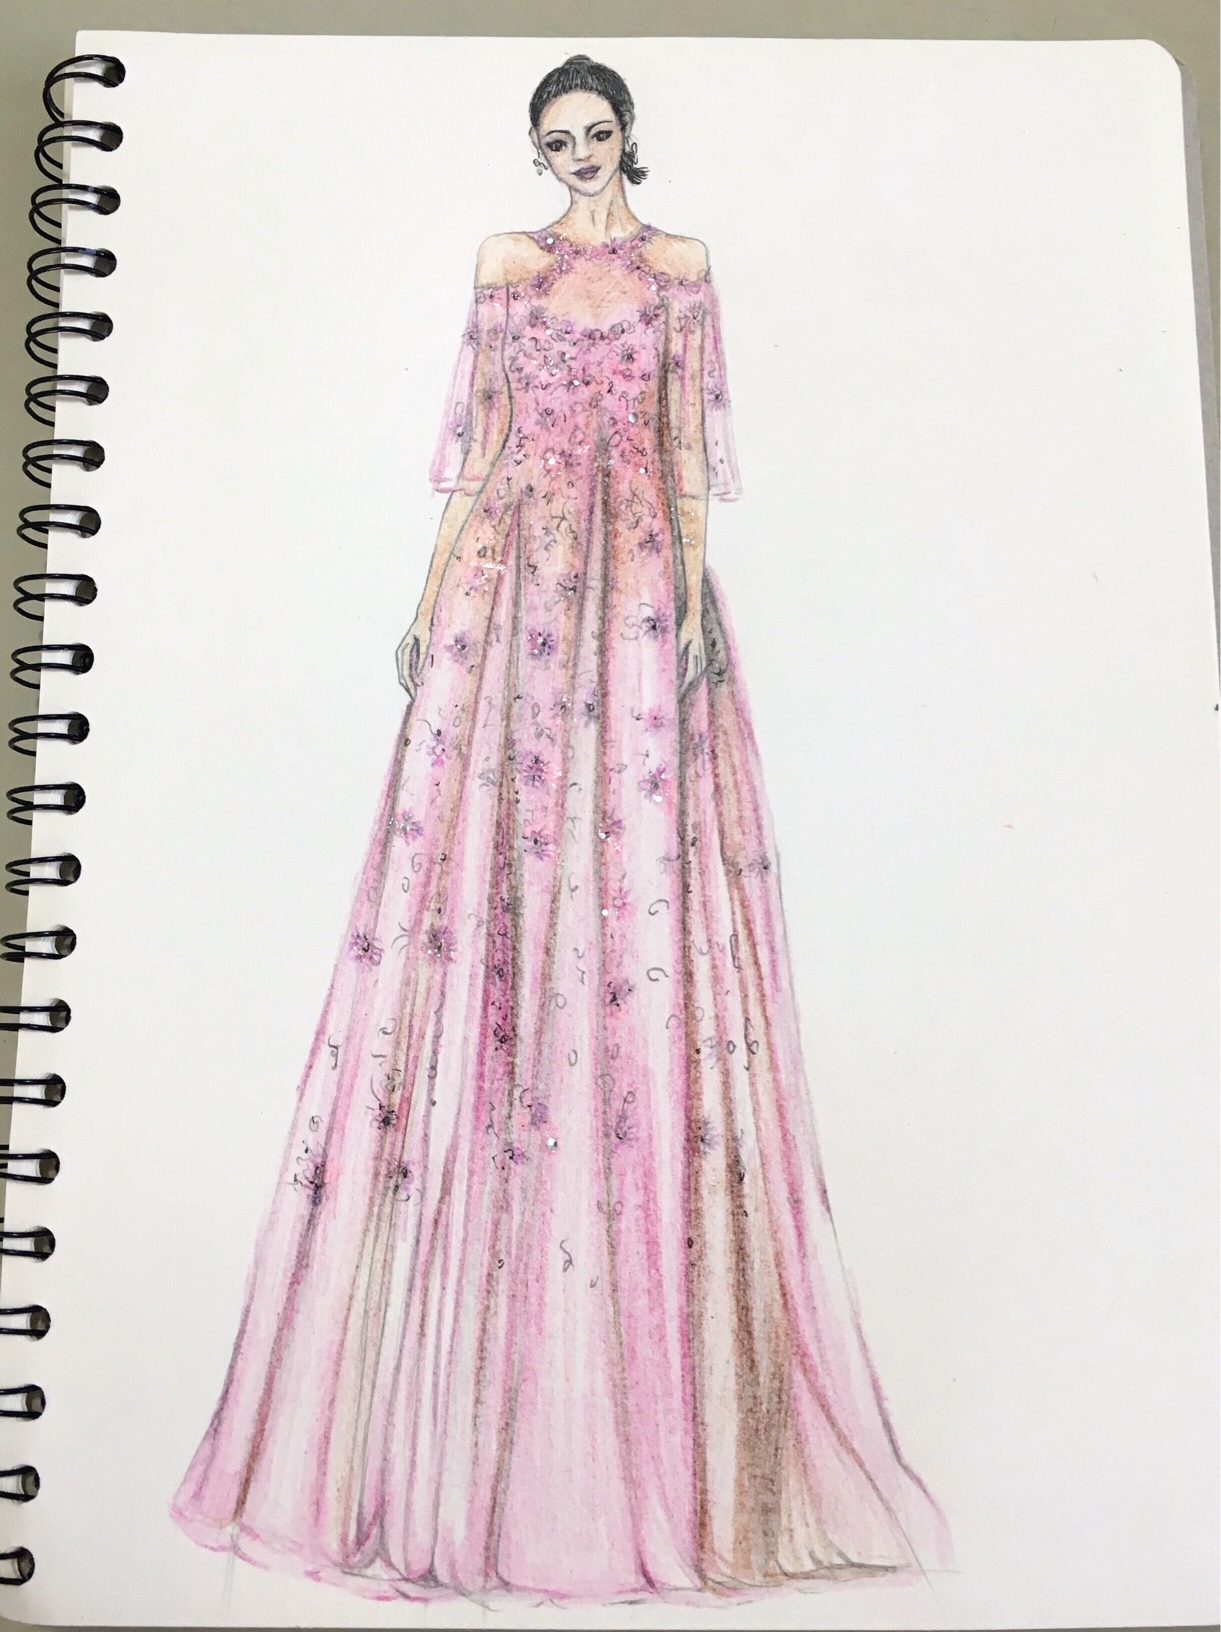 彩铅手绘仙女裙-服装画/服装设计手稿 - 穿针引线服装